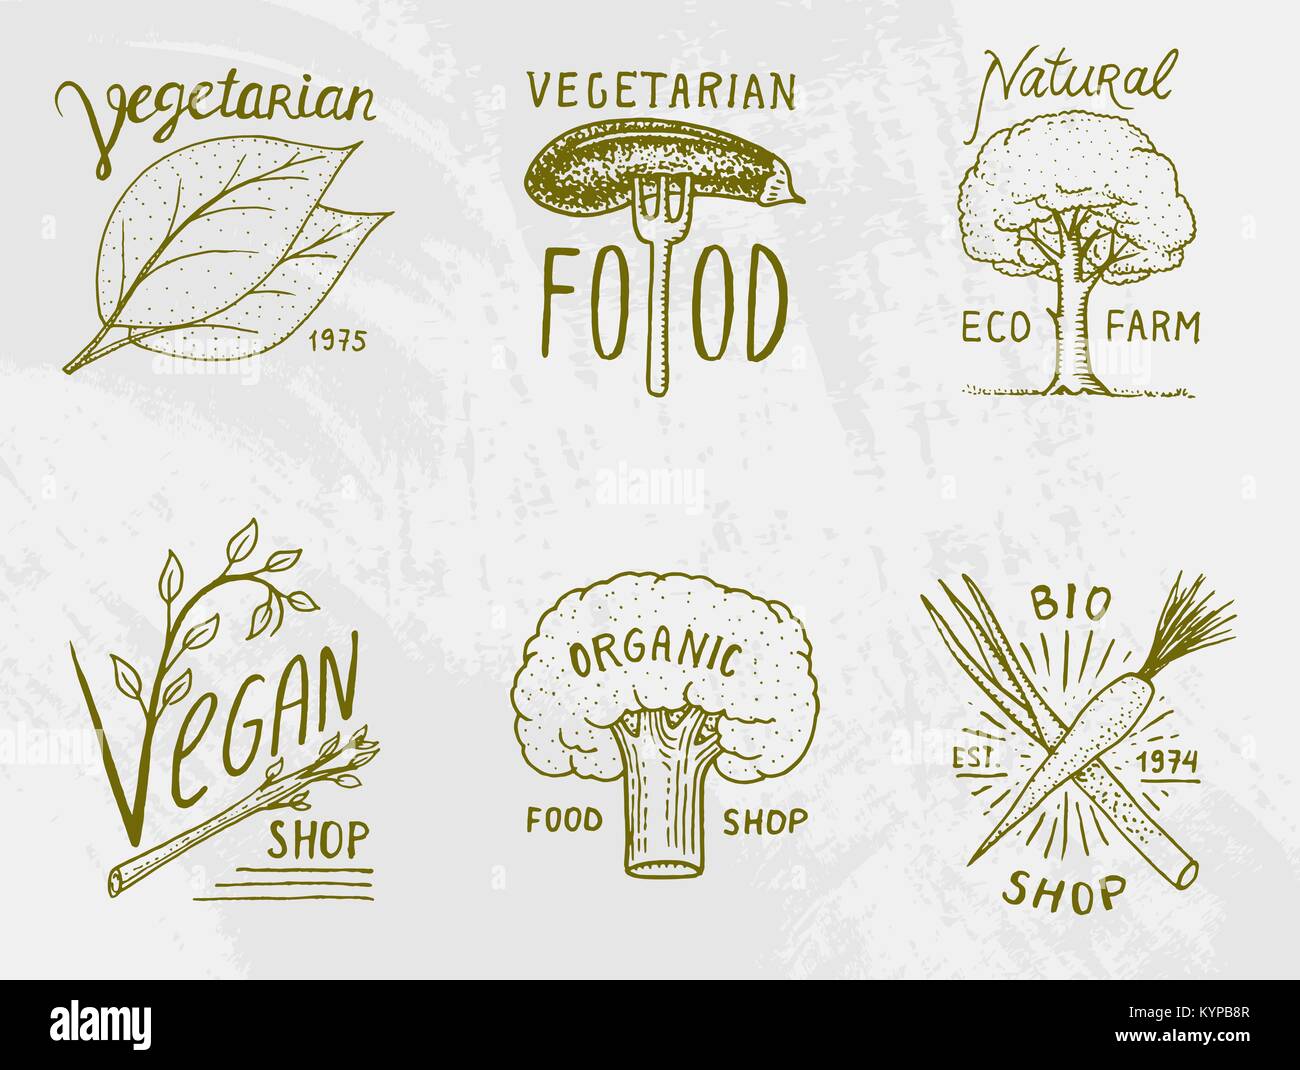 Gesunde Bio-lebensmittel Logos oder Etiketten und Elemente für Vegetarische und Farm grün Natur Gemüse, Vector Illustration. Abzeichen gesundes Leben. graviert Hand in alte Skizze gezeichnet. Stock Vektor